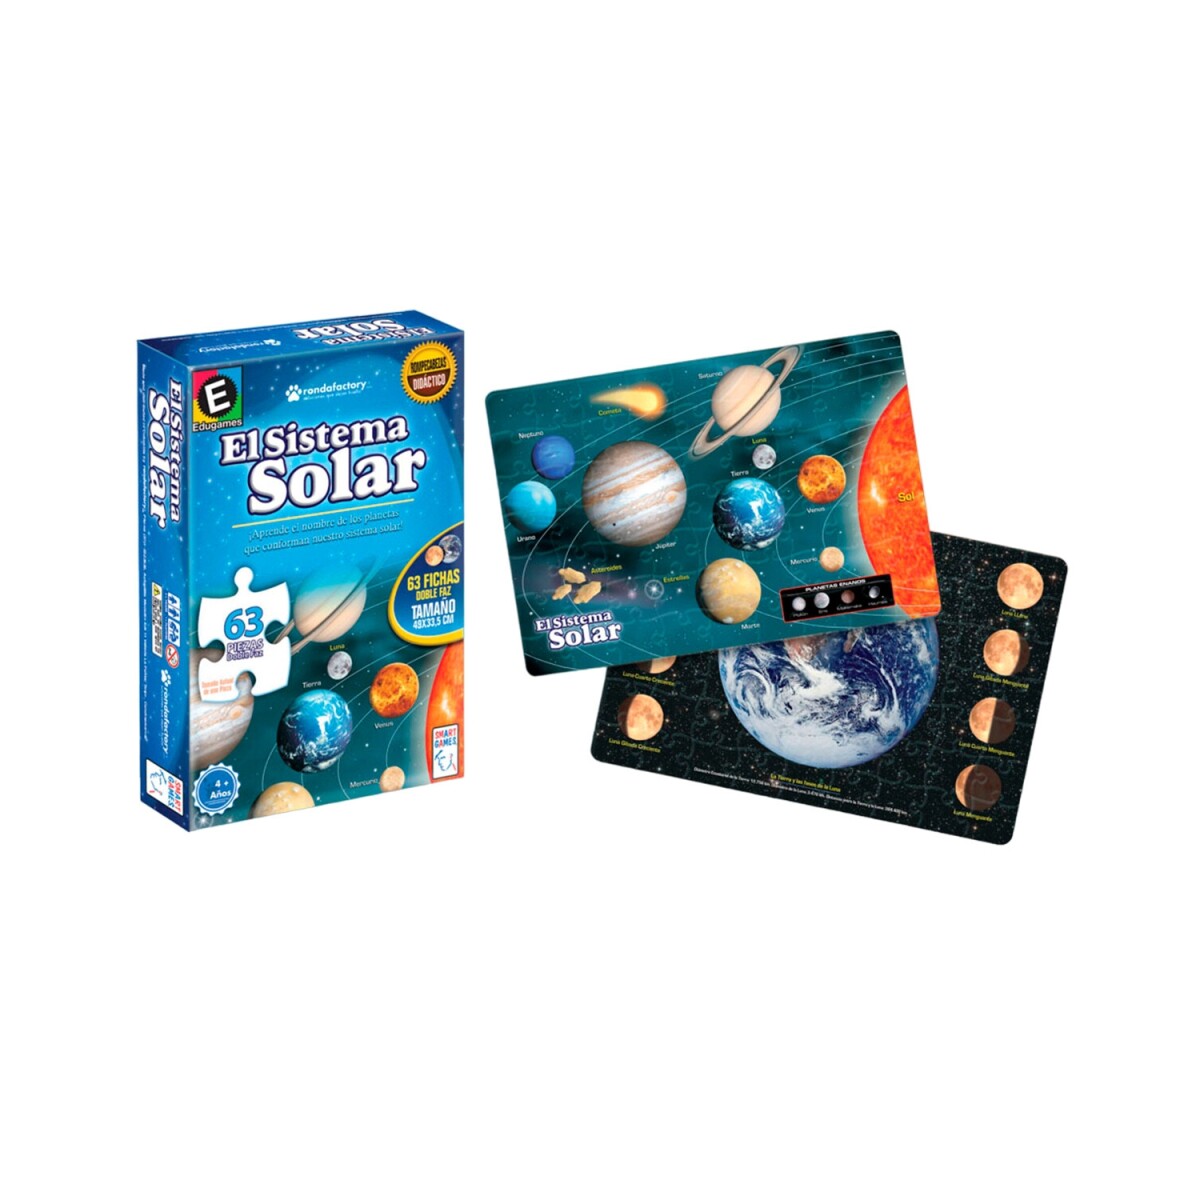 Puzzle Ronda sistema solar educativo con 63 piezas 